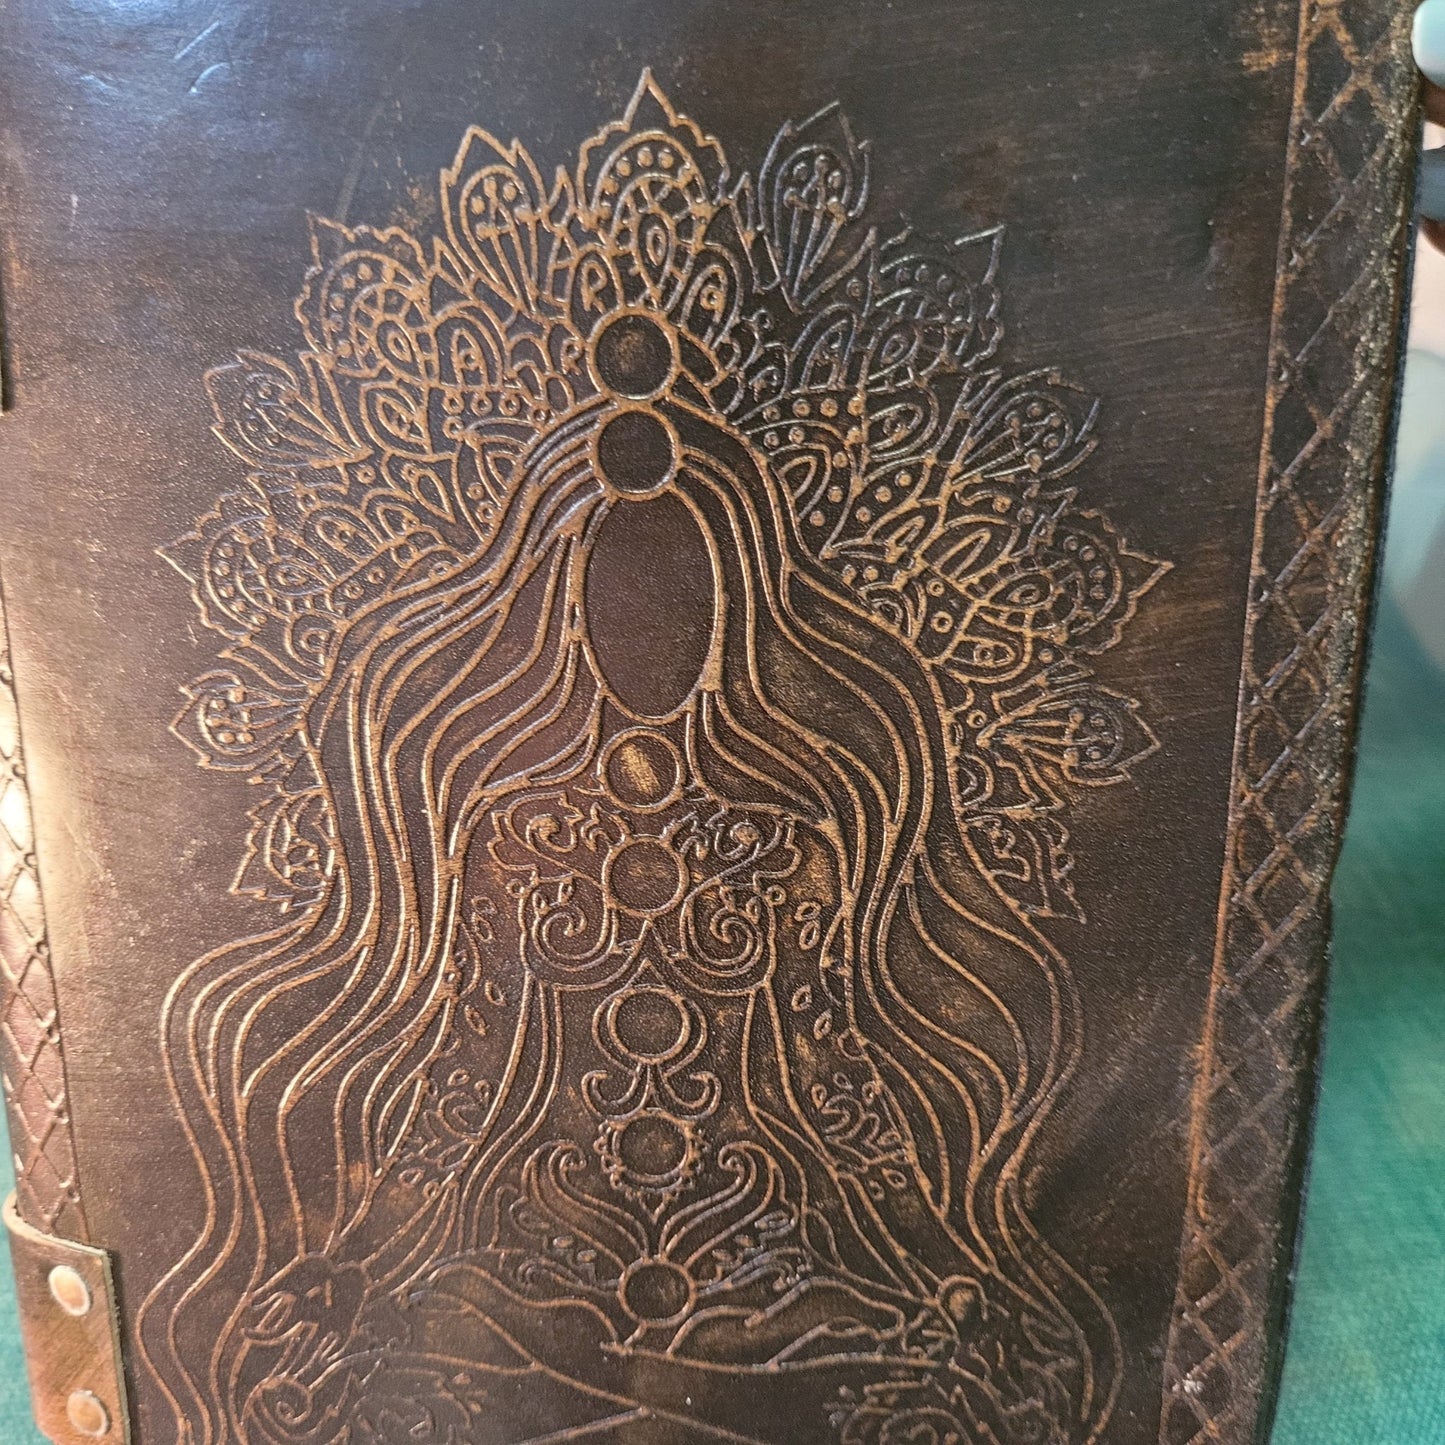 Handmade Embossed Angel Leather journal - Samriidhhii Store